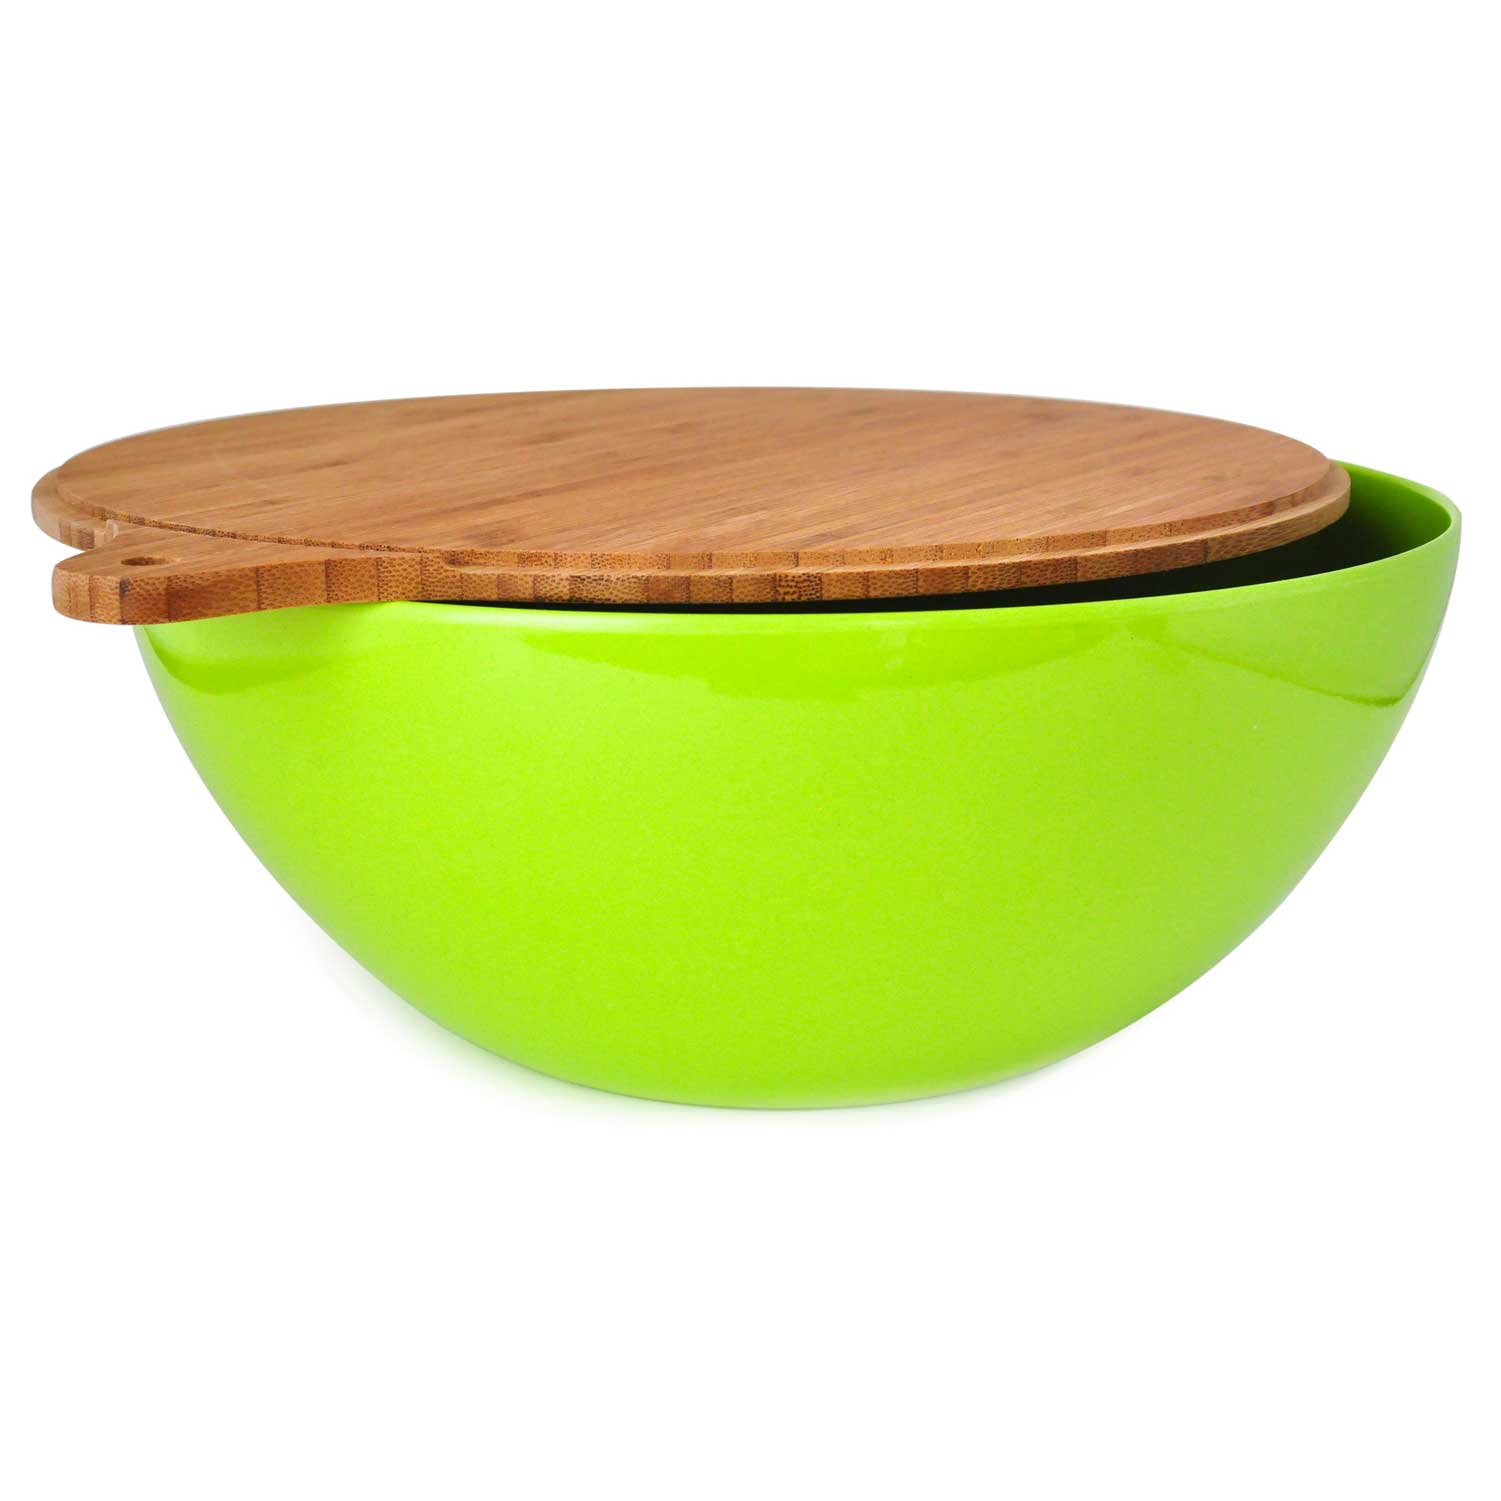 yumi-452-nature-green-natural-bamboo-salad-bowl-with-cover.jpg